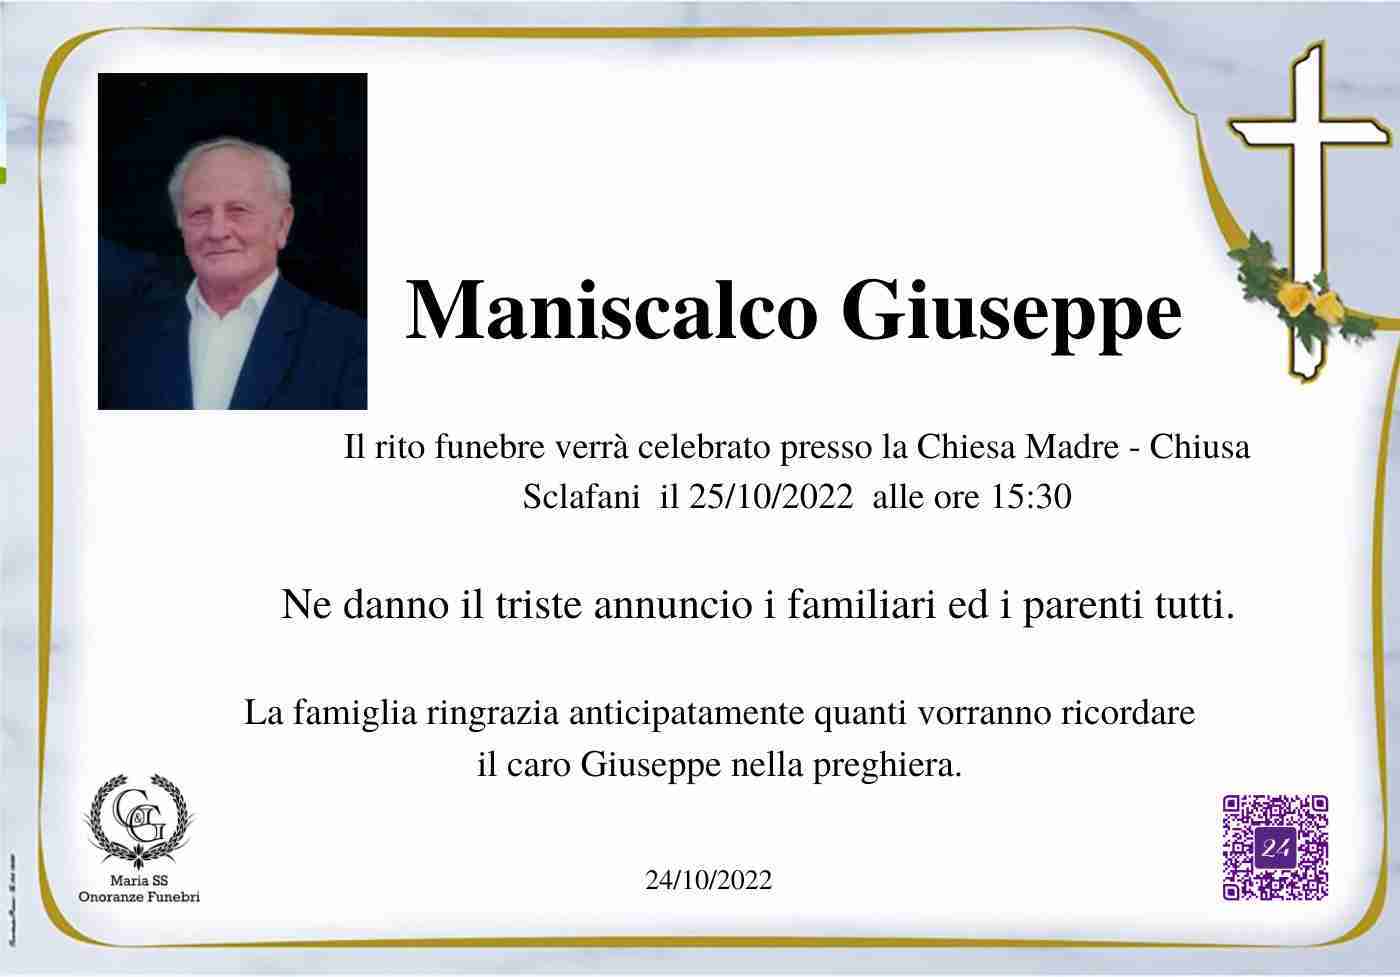 Giuseppe Maniscalco